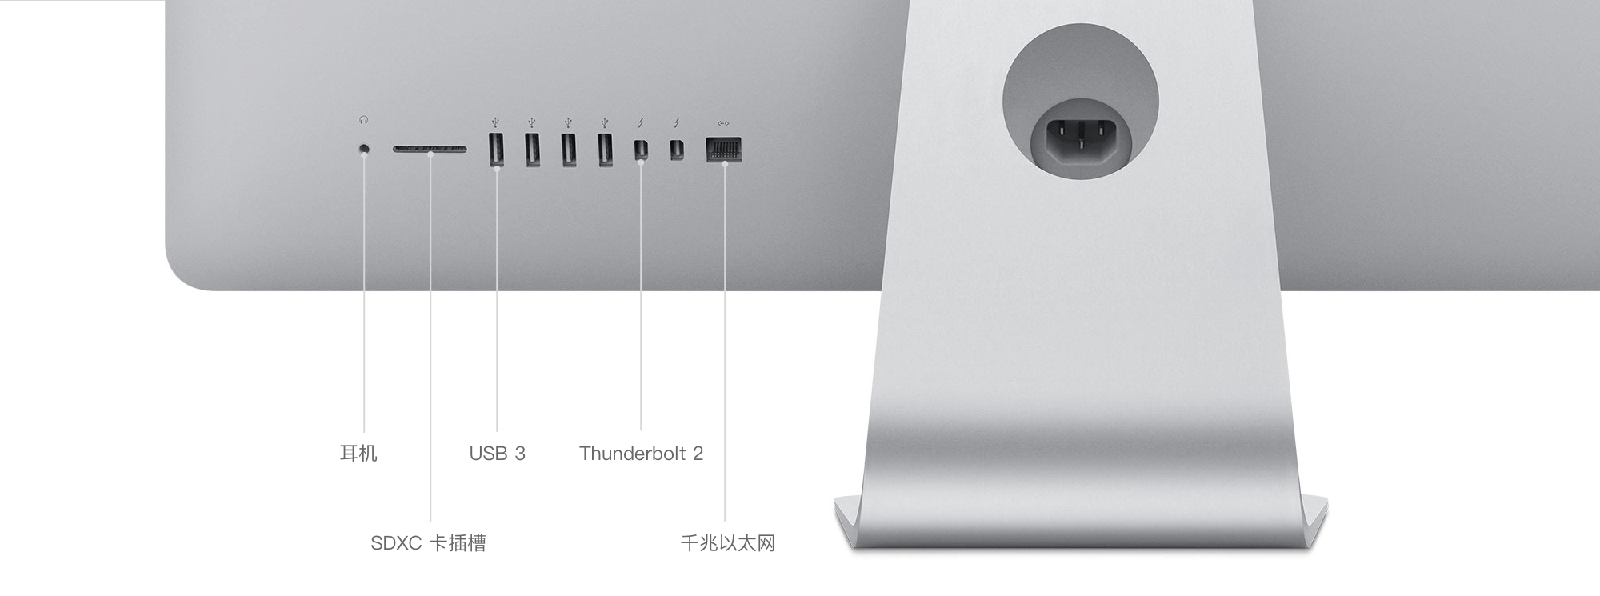 iMac (21.5 英寸, 2015 年末机型) - 技术规格(中国)